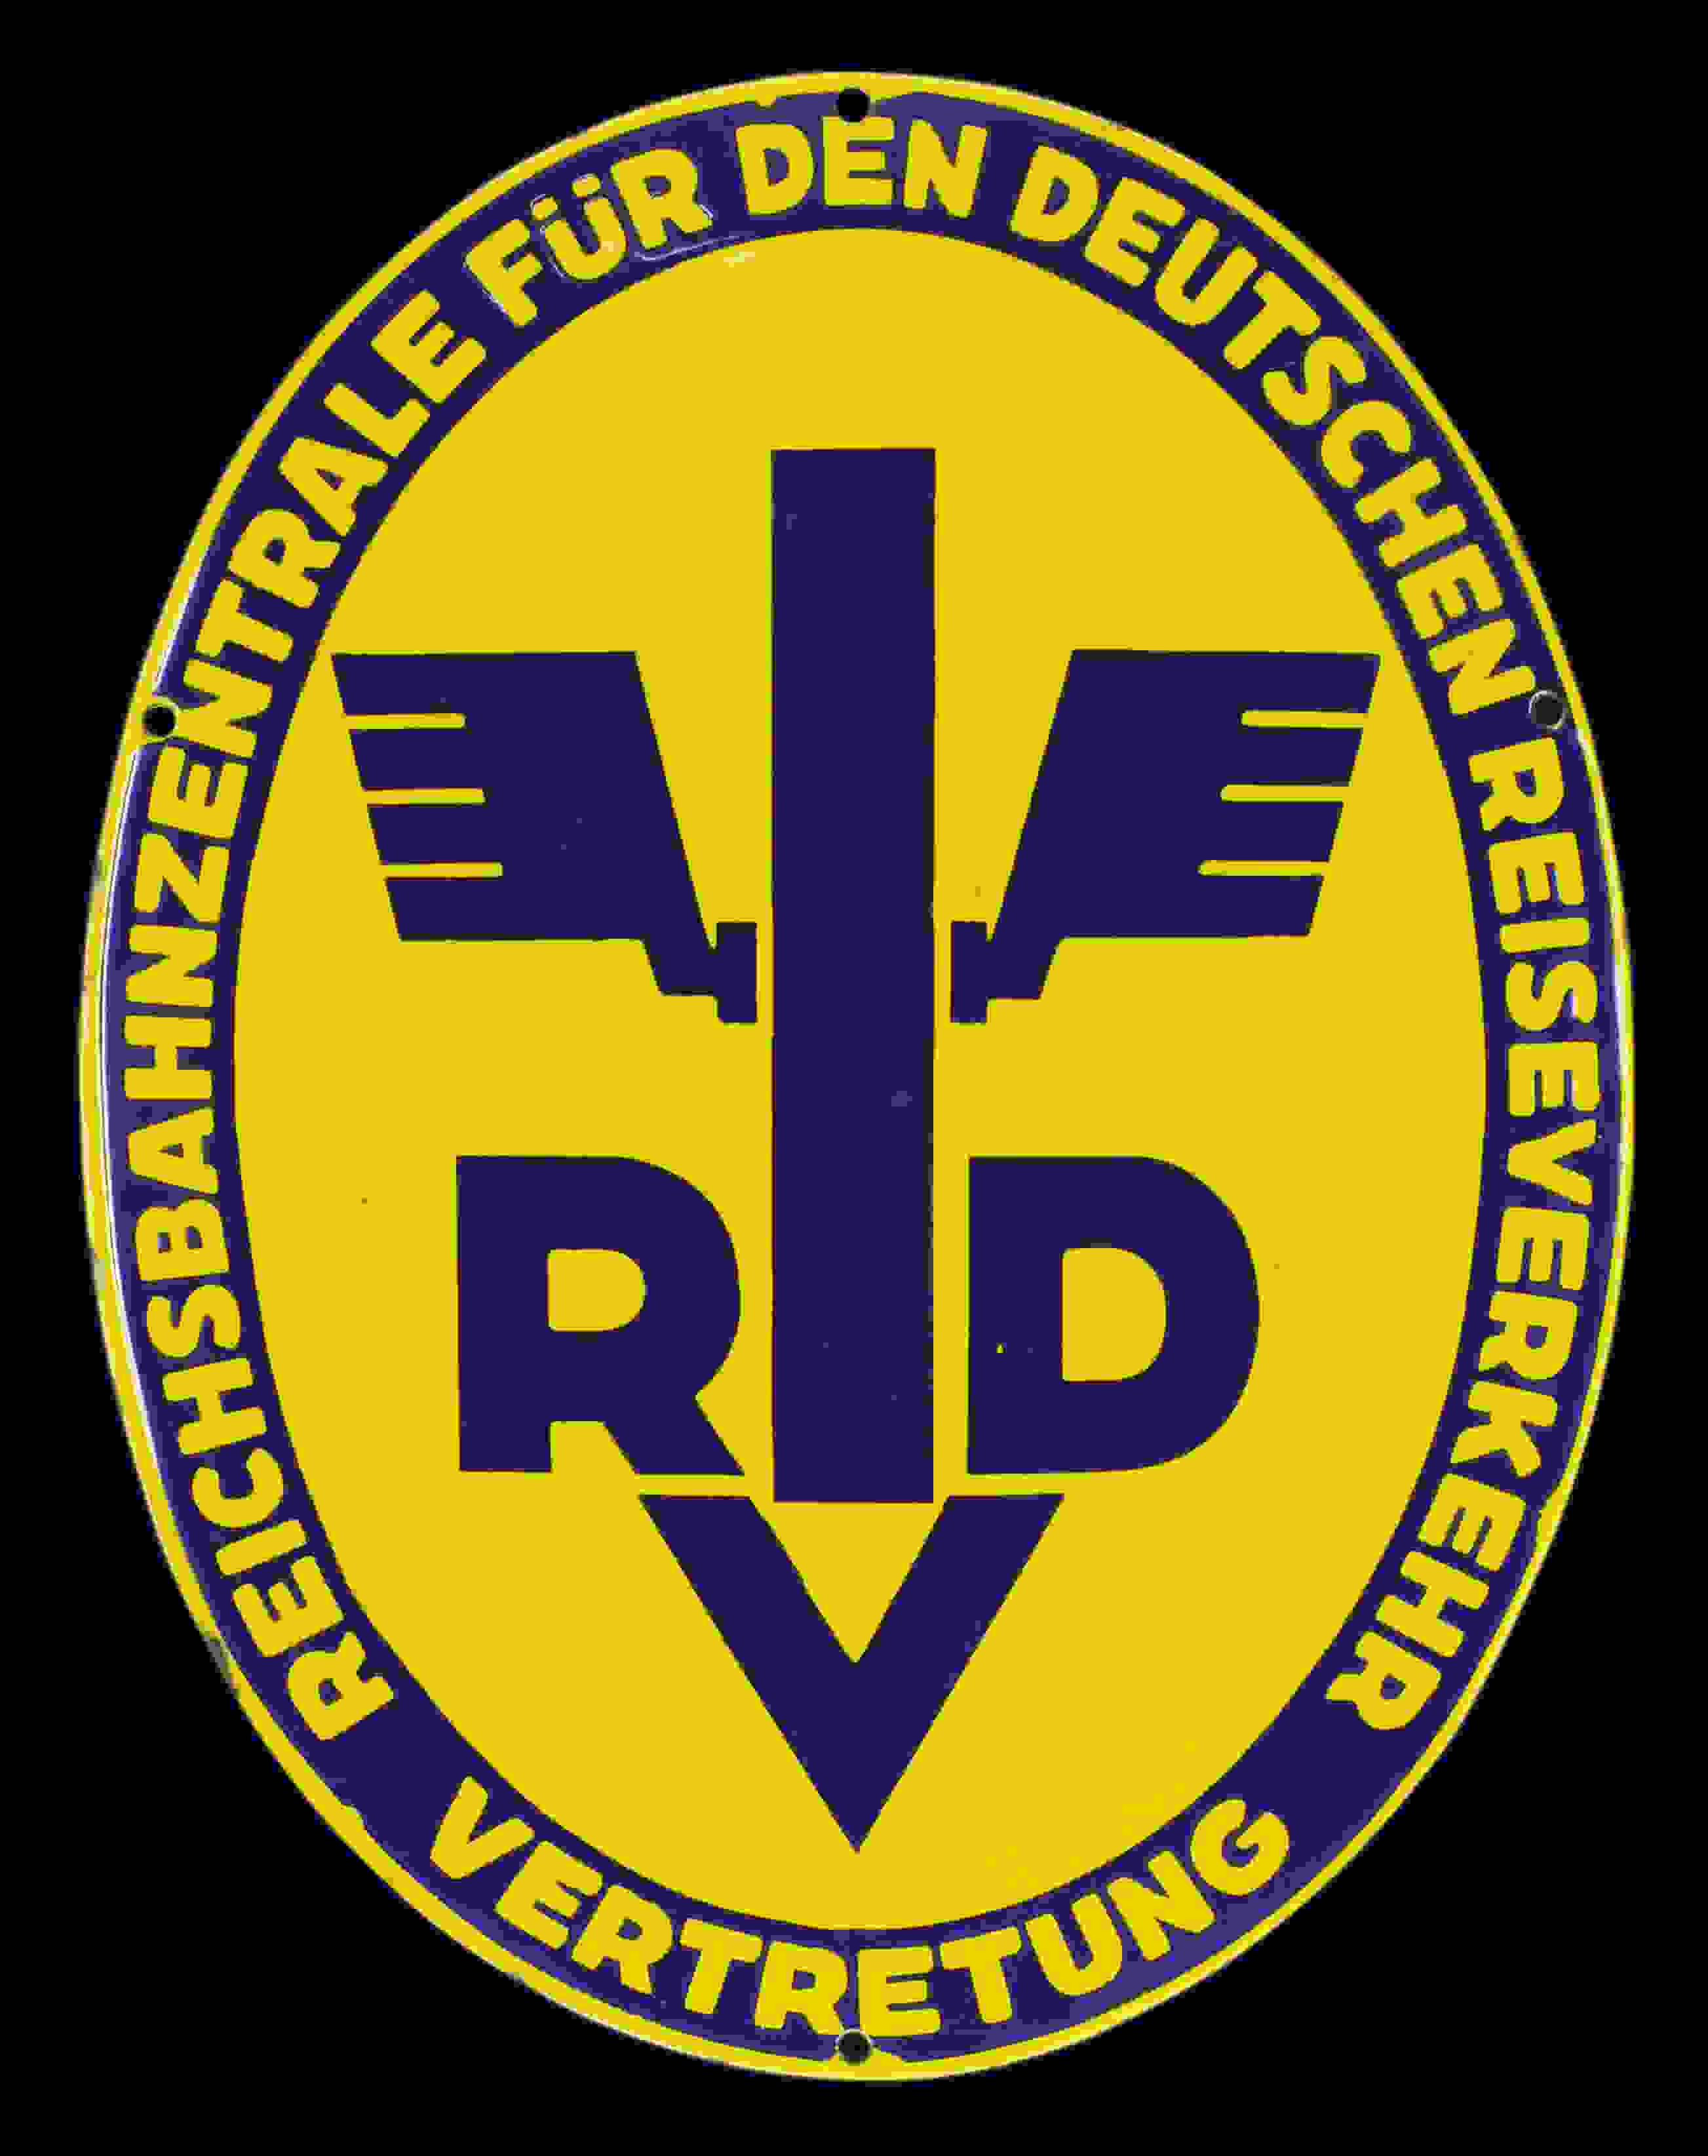 RVD Reichsbahnzentrale 